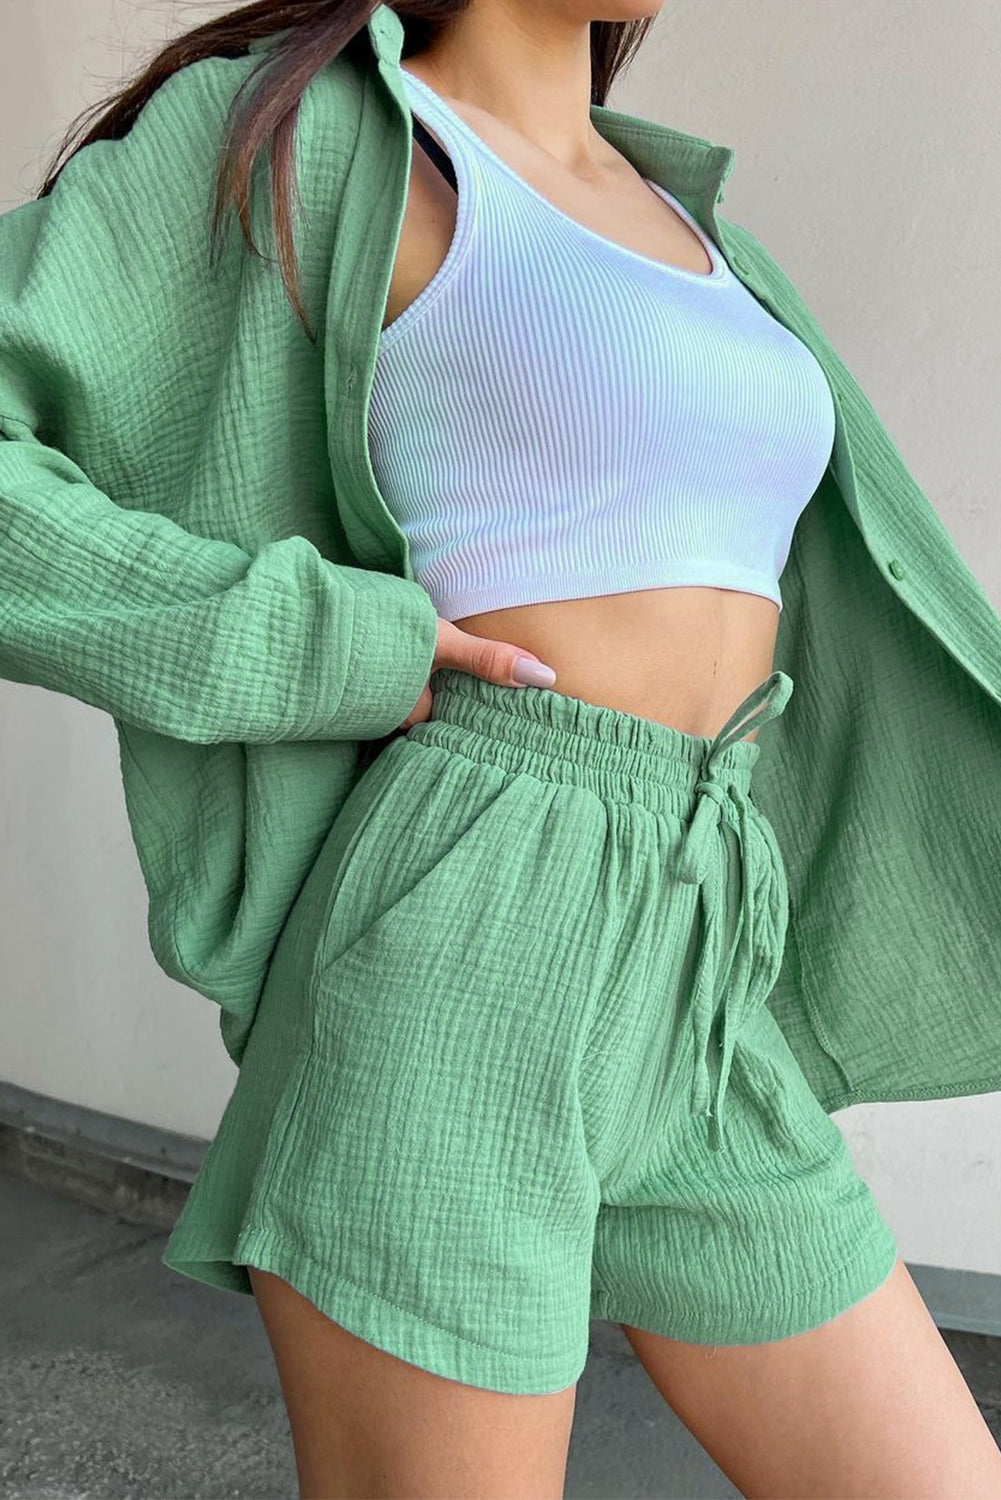 Koh Samui - Long Sleeve Shirt + Short Set - Green